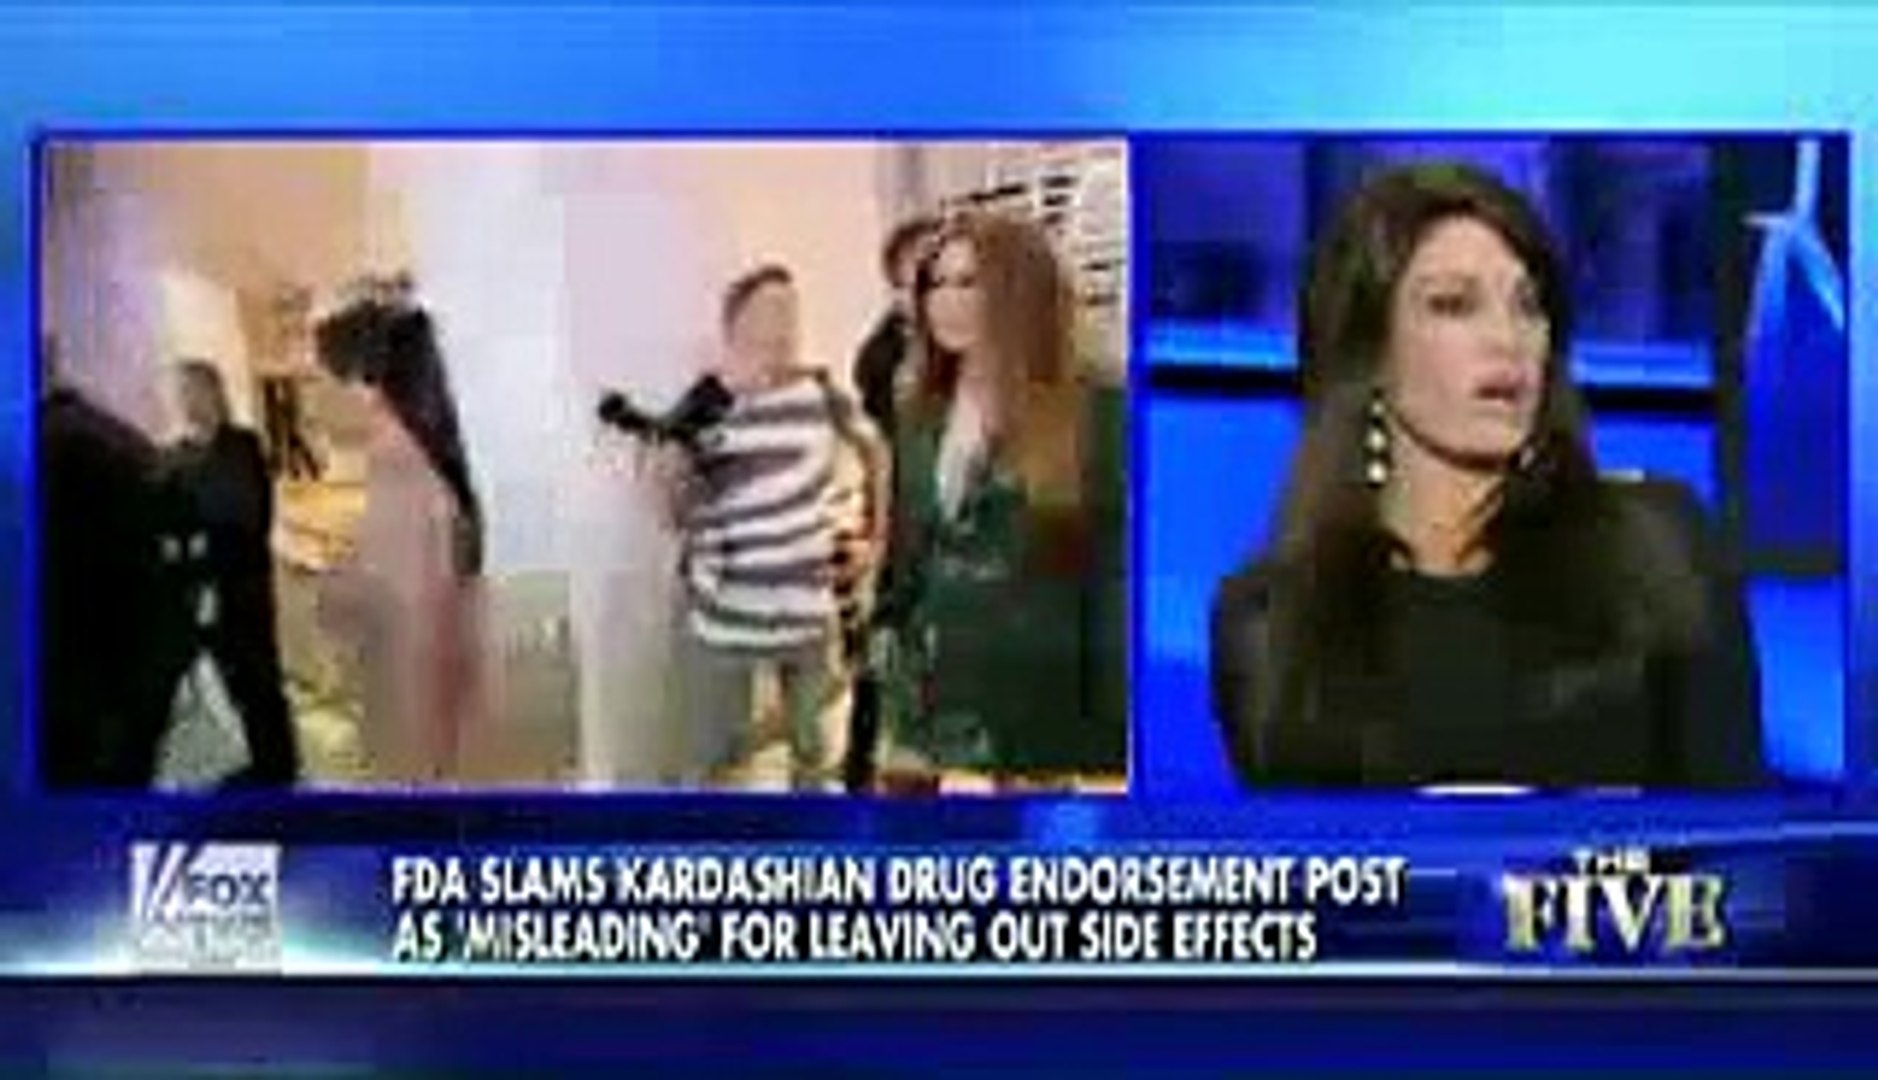 Is Kim Kardashian's advice hazardous to your health? - FoxTV Entertainment News